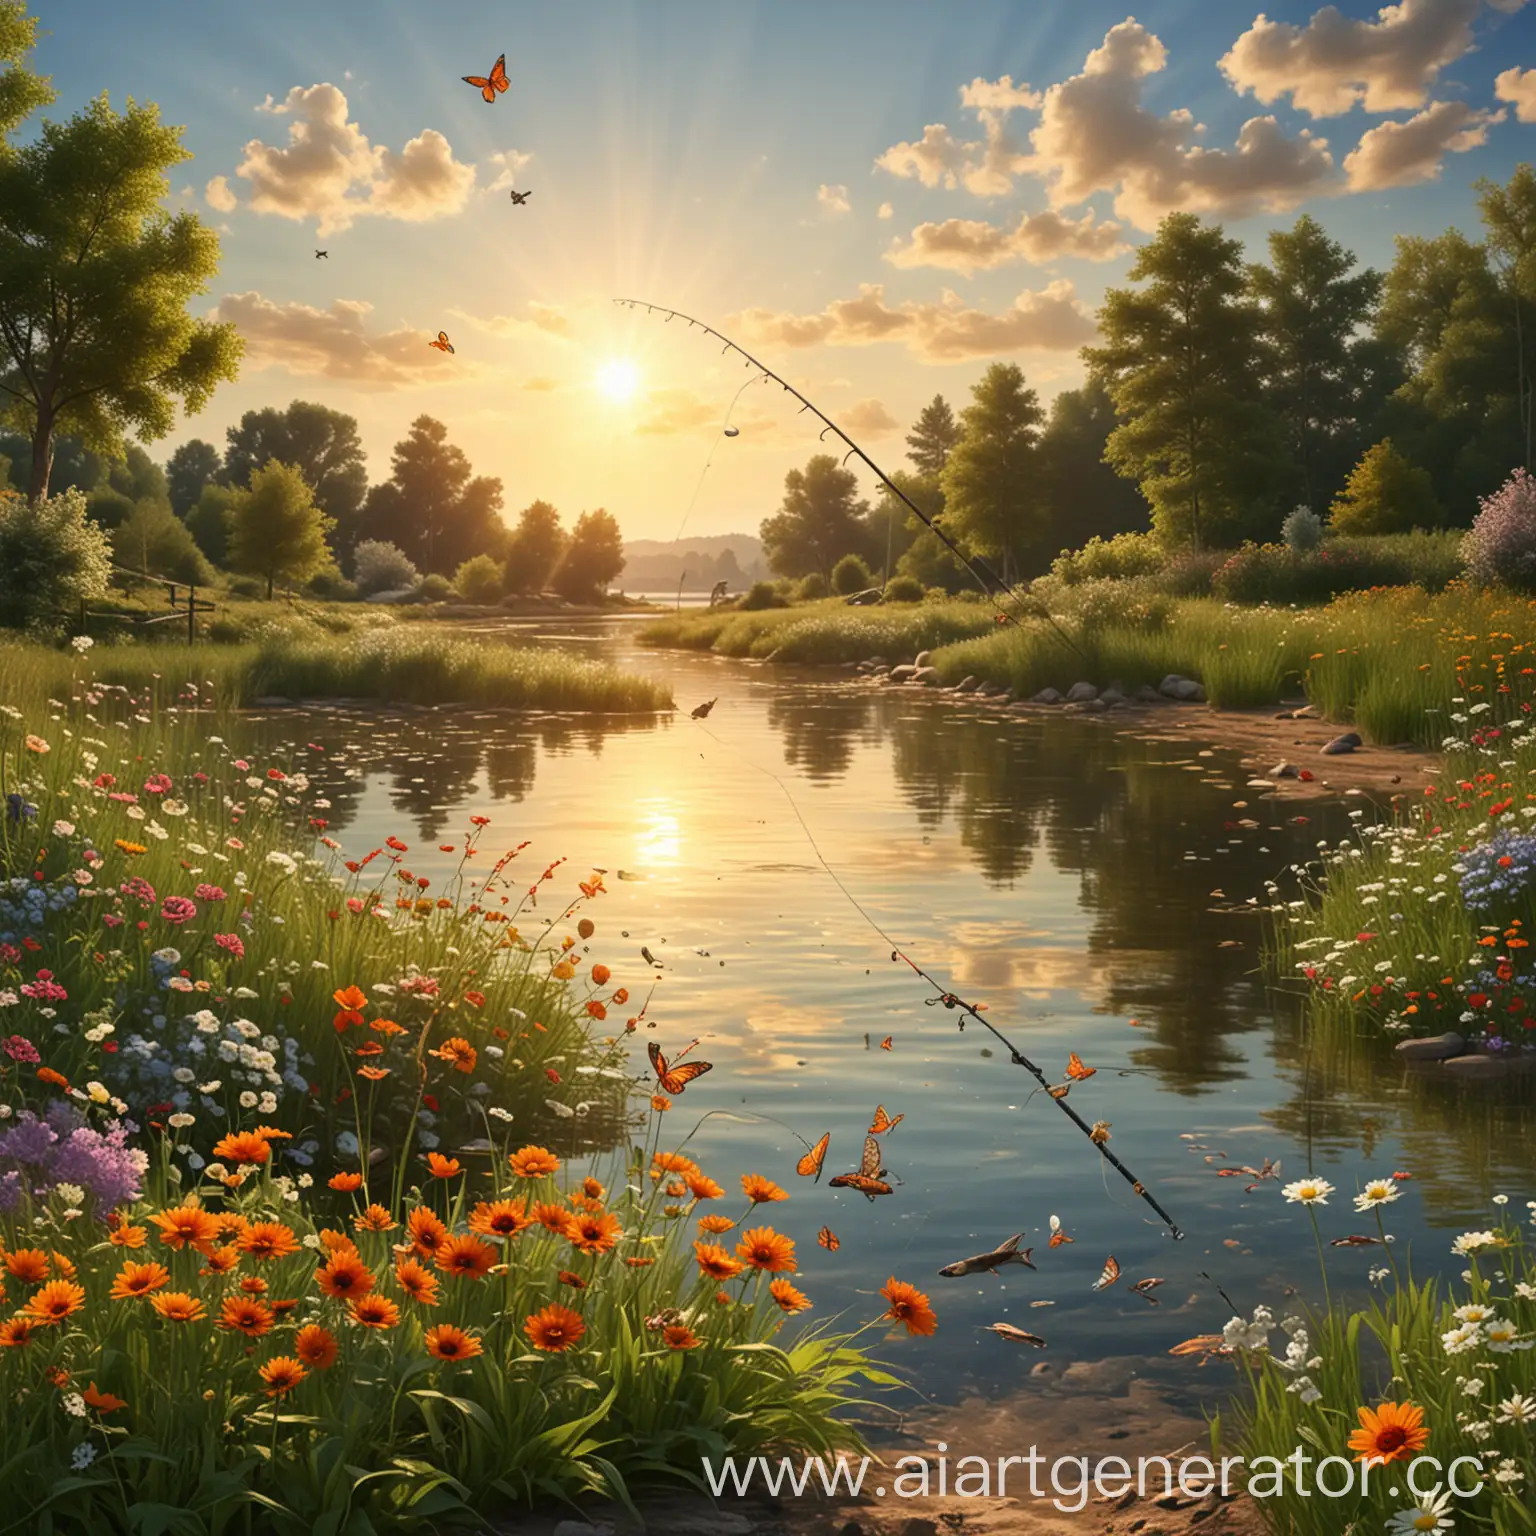 Сгенерируй картинку летнего пейзажа, на которой должно быть: солнце, удочка, рыба, бабочки, цветы